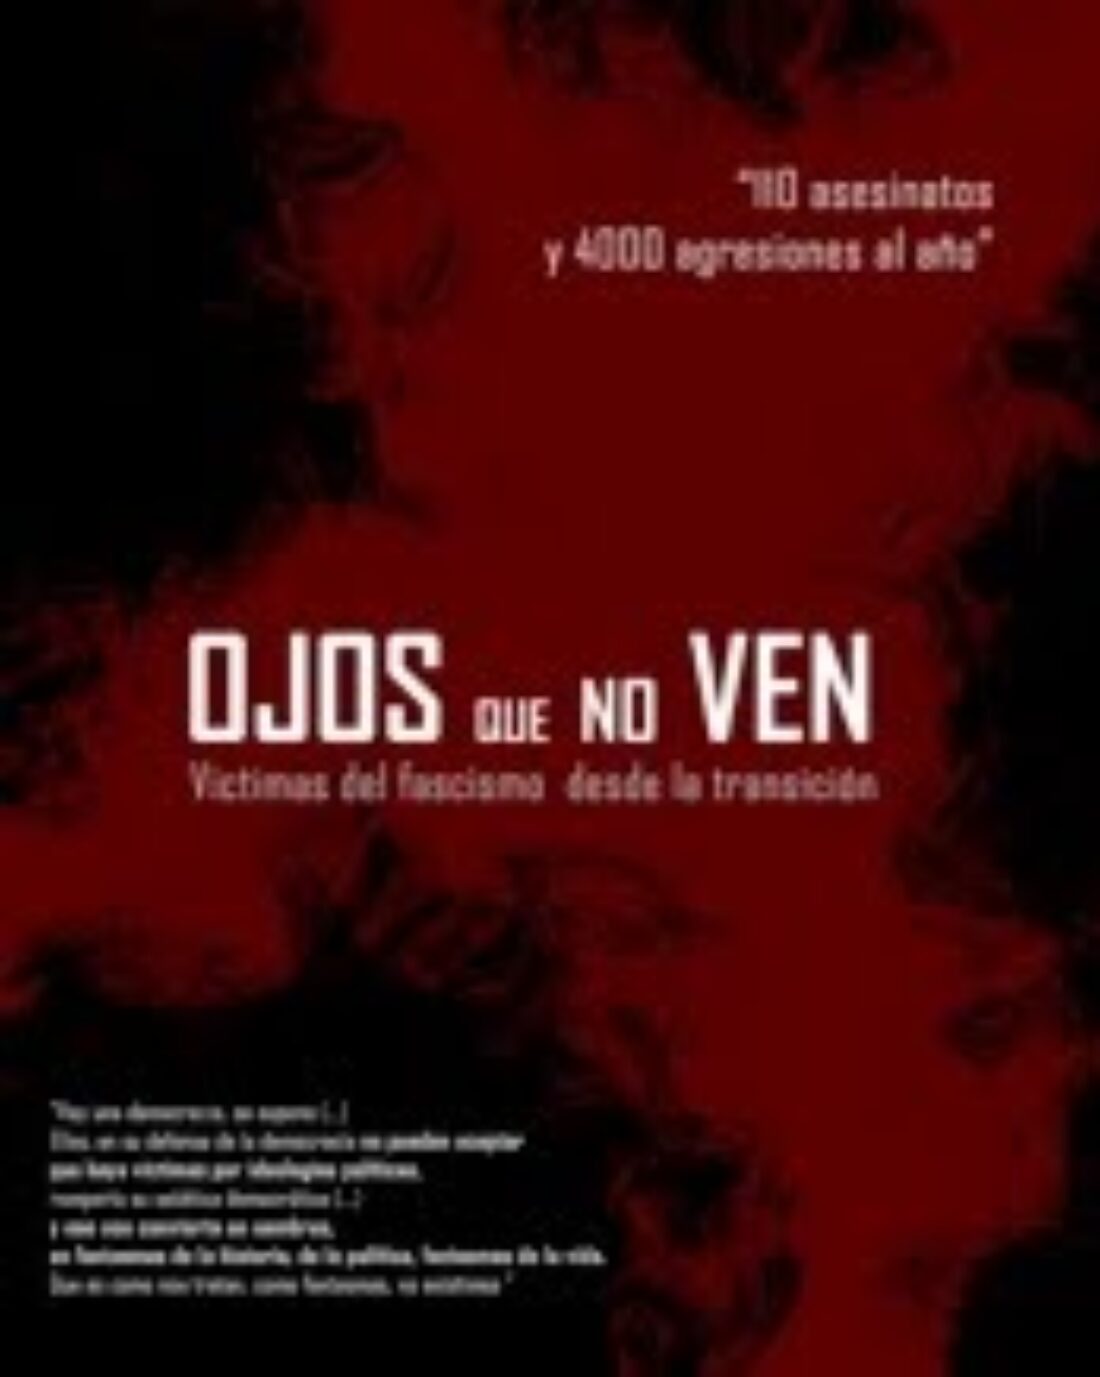 Madrid: Estreno del documental “Ojos que no ven. Víctimas del fascismo y el racismo”